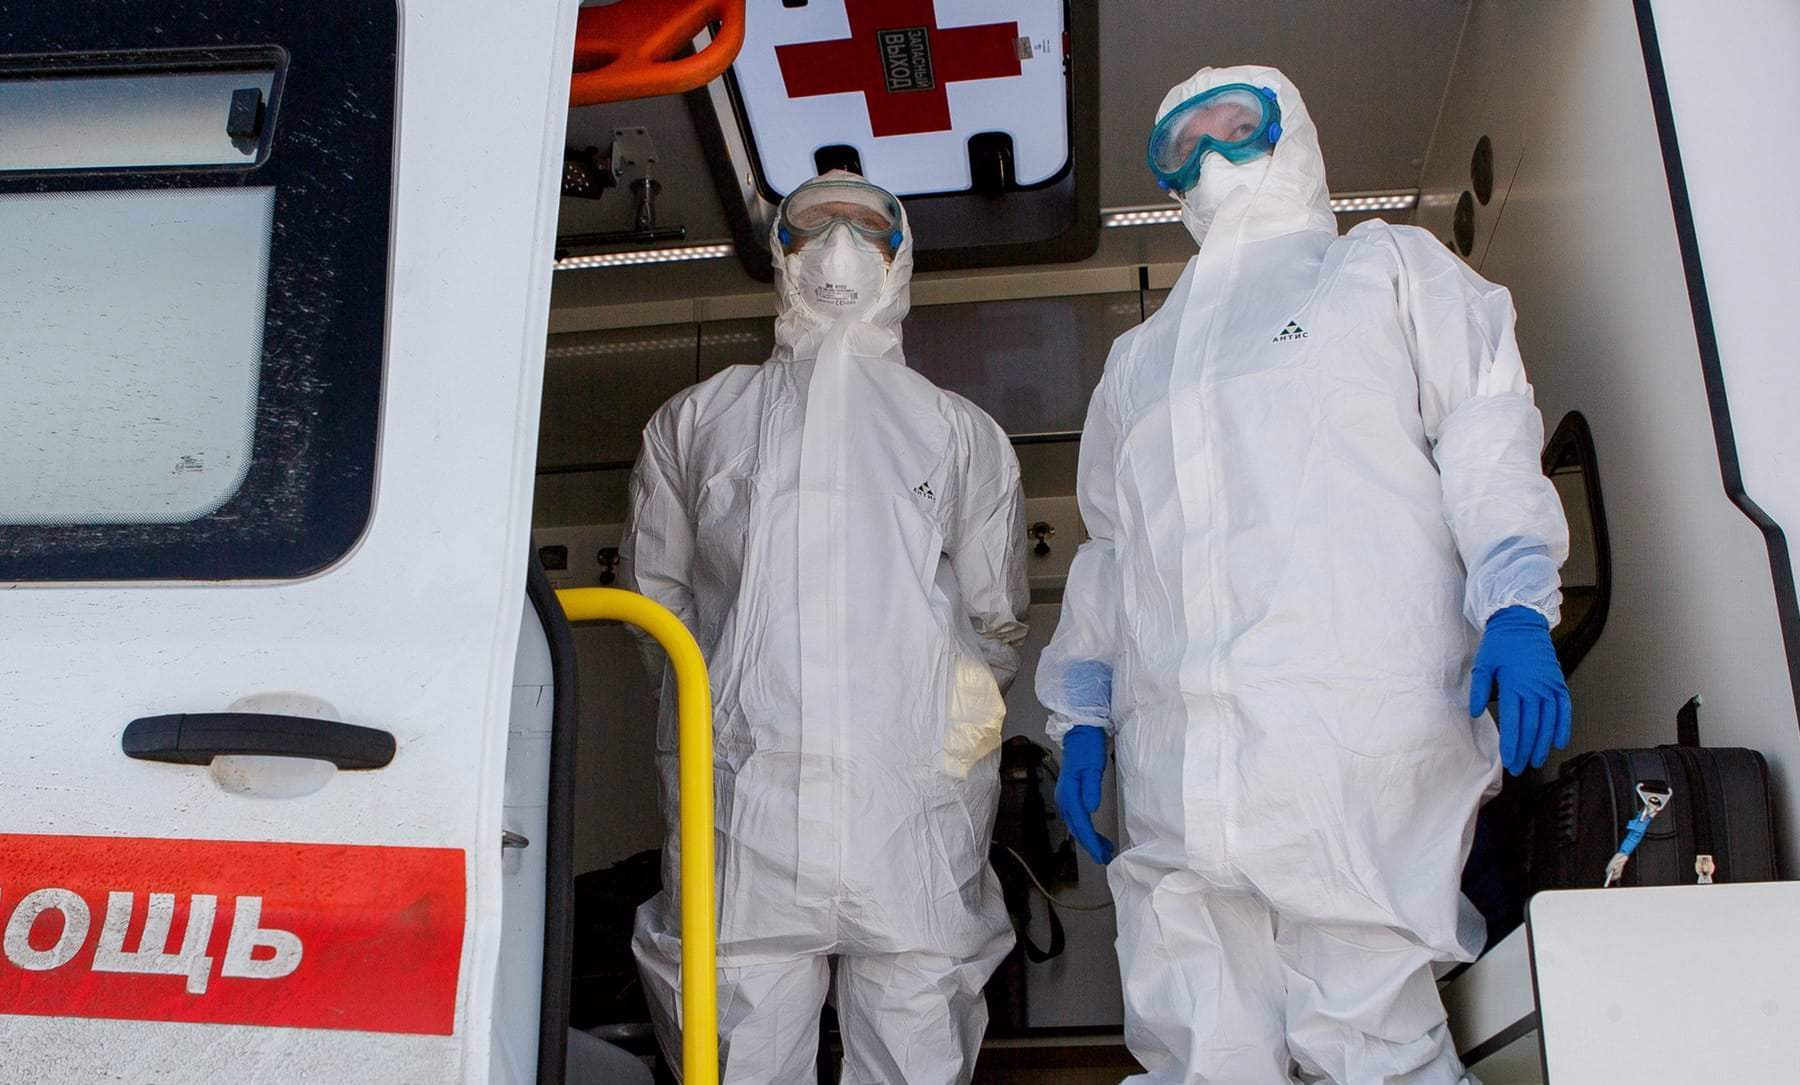 Оперштаб: в Тверской области к 2 сентября еще 23 человека заболели коронавирусом